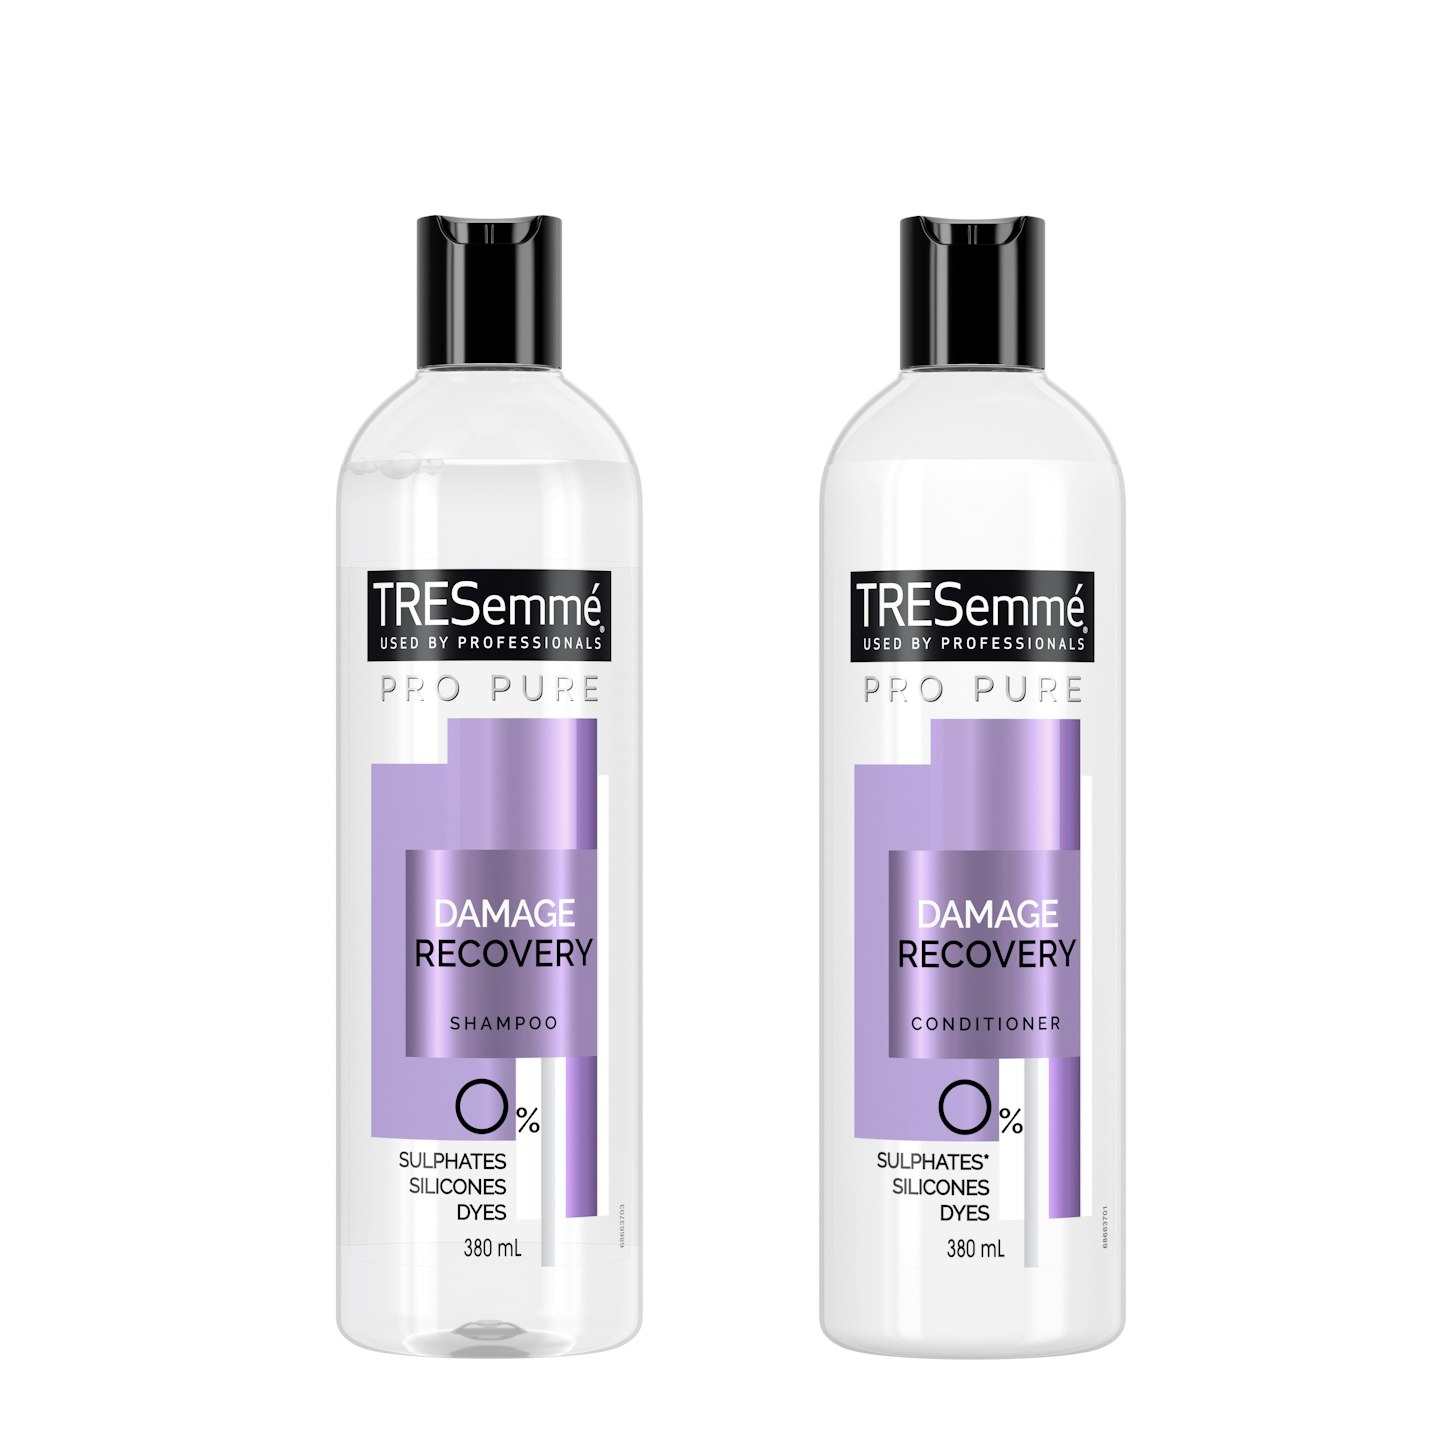 TRESemmu00e9 Pro Pure Shampoo & Conditioner, £5.99 (each)